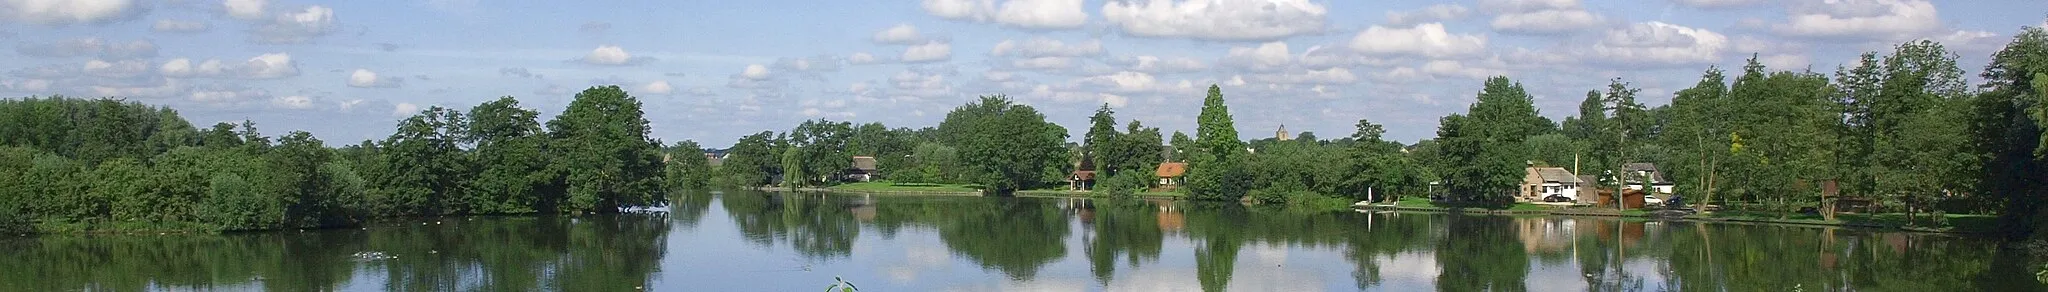 Photo showing: The Schoonrewoerdse Wiel seen from the eastern side on the Diefdijk